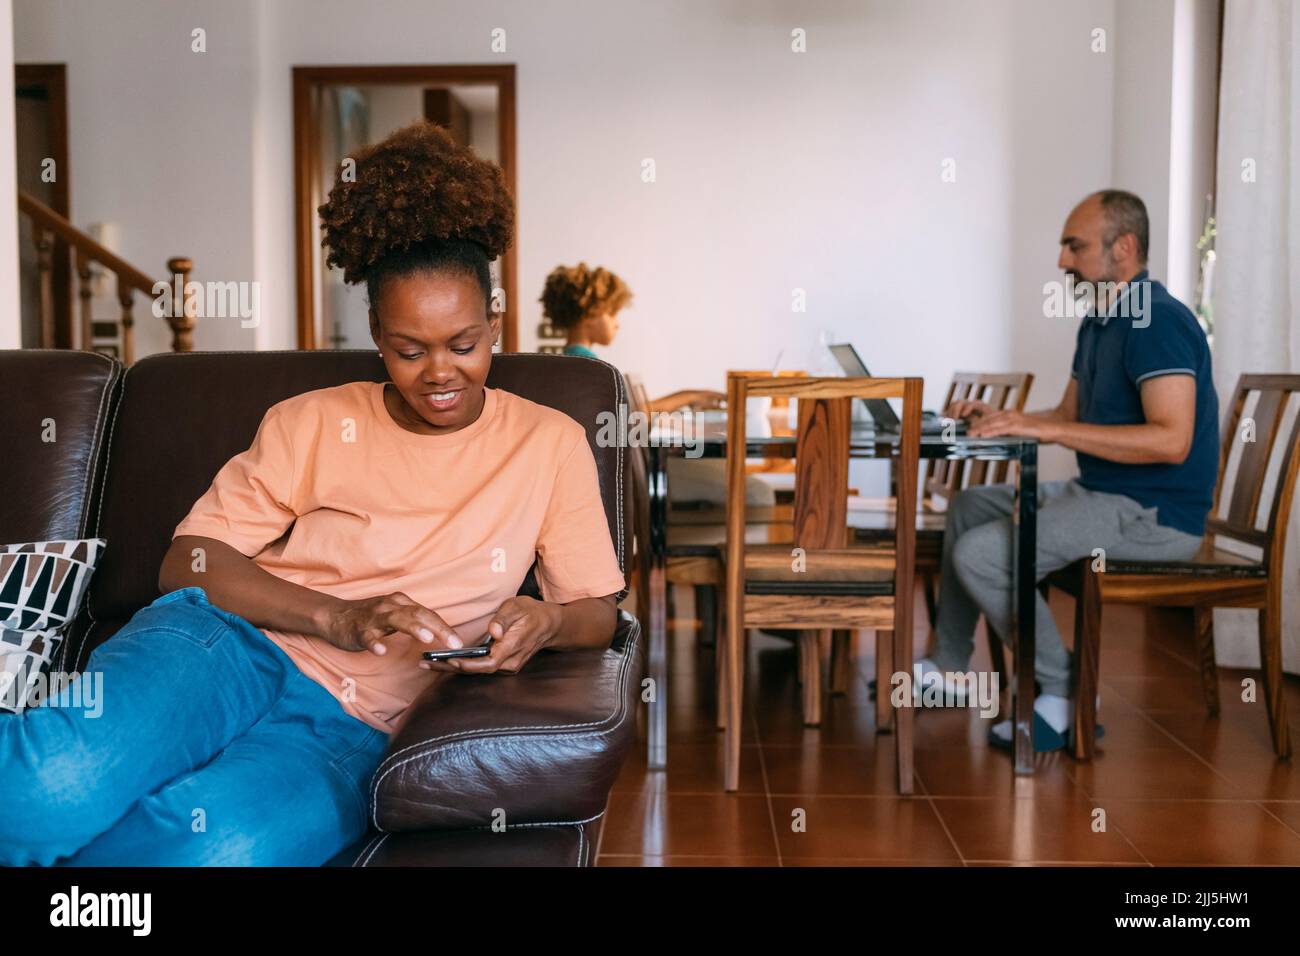 Femme souriante utilisant un smartphone assis devant l'homme et la fille à la maison Banque D'Images